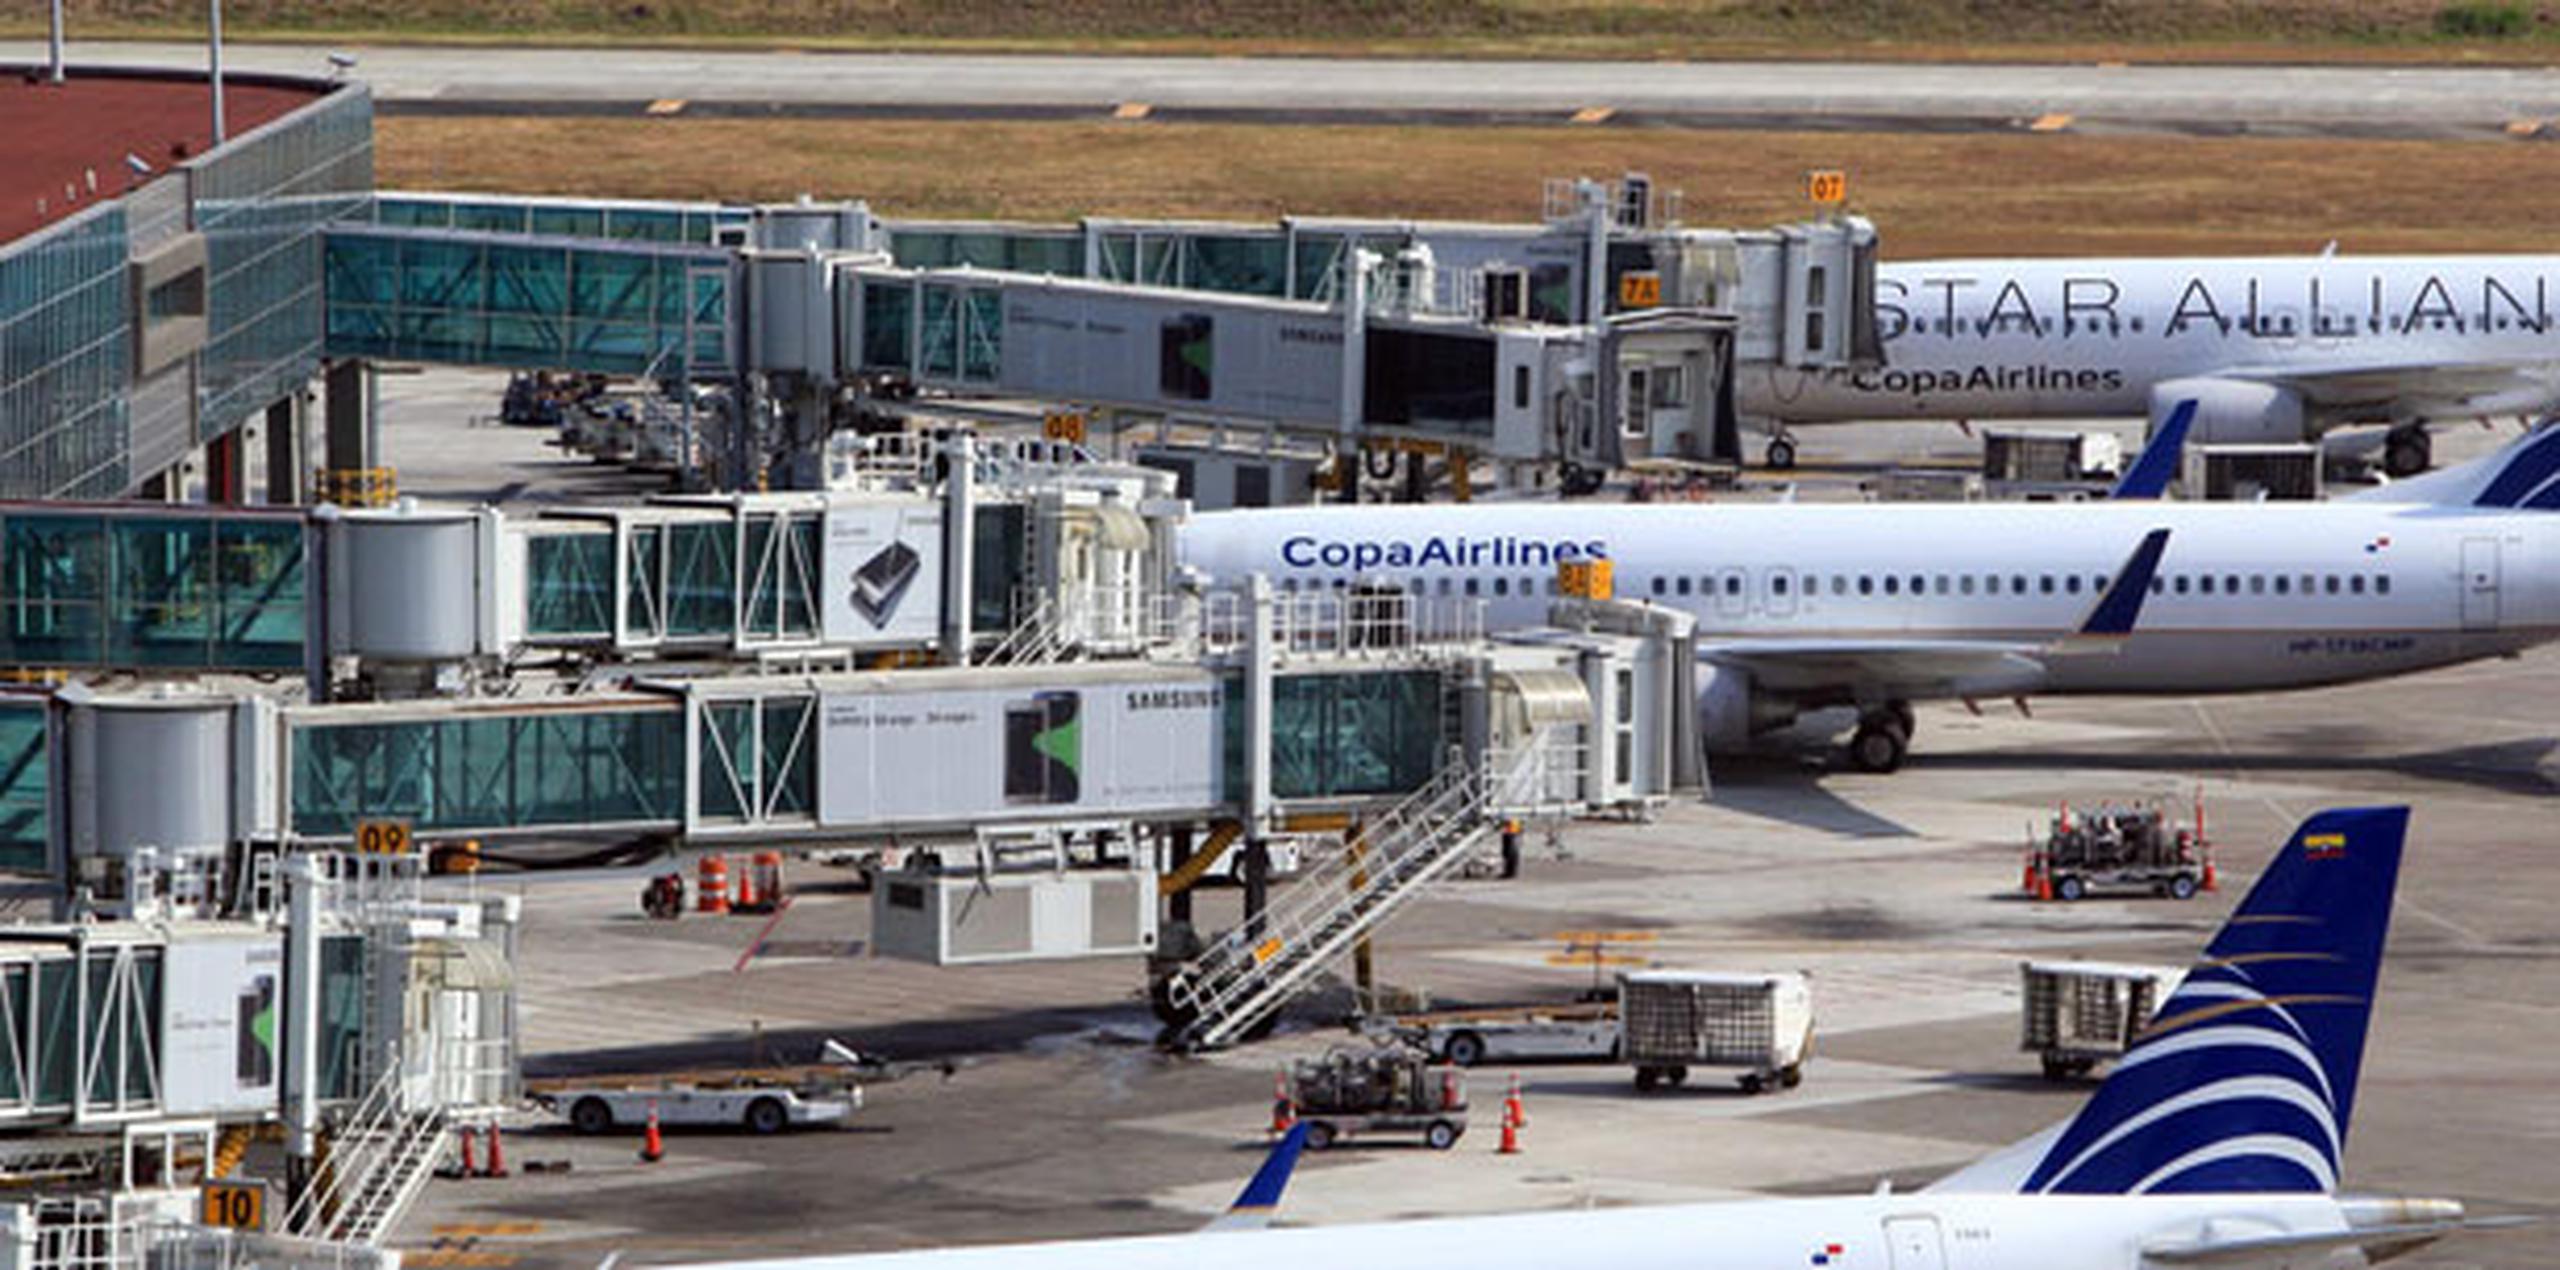 El avión de la compañía panameña iba cargado con 30 pasajeros y 10 toneladas de alimentos secos, agua potable y artículos de higiene, explicó a Efe un portavoz de Copa Airlines. (Archivo)